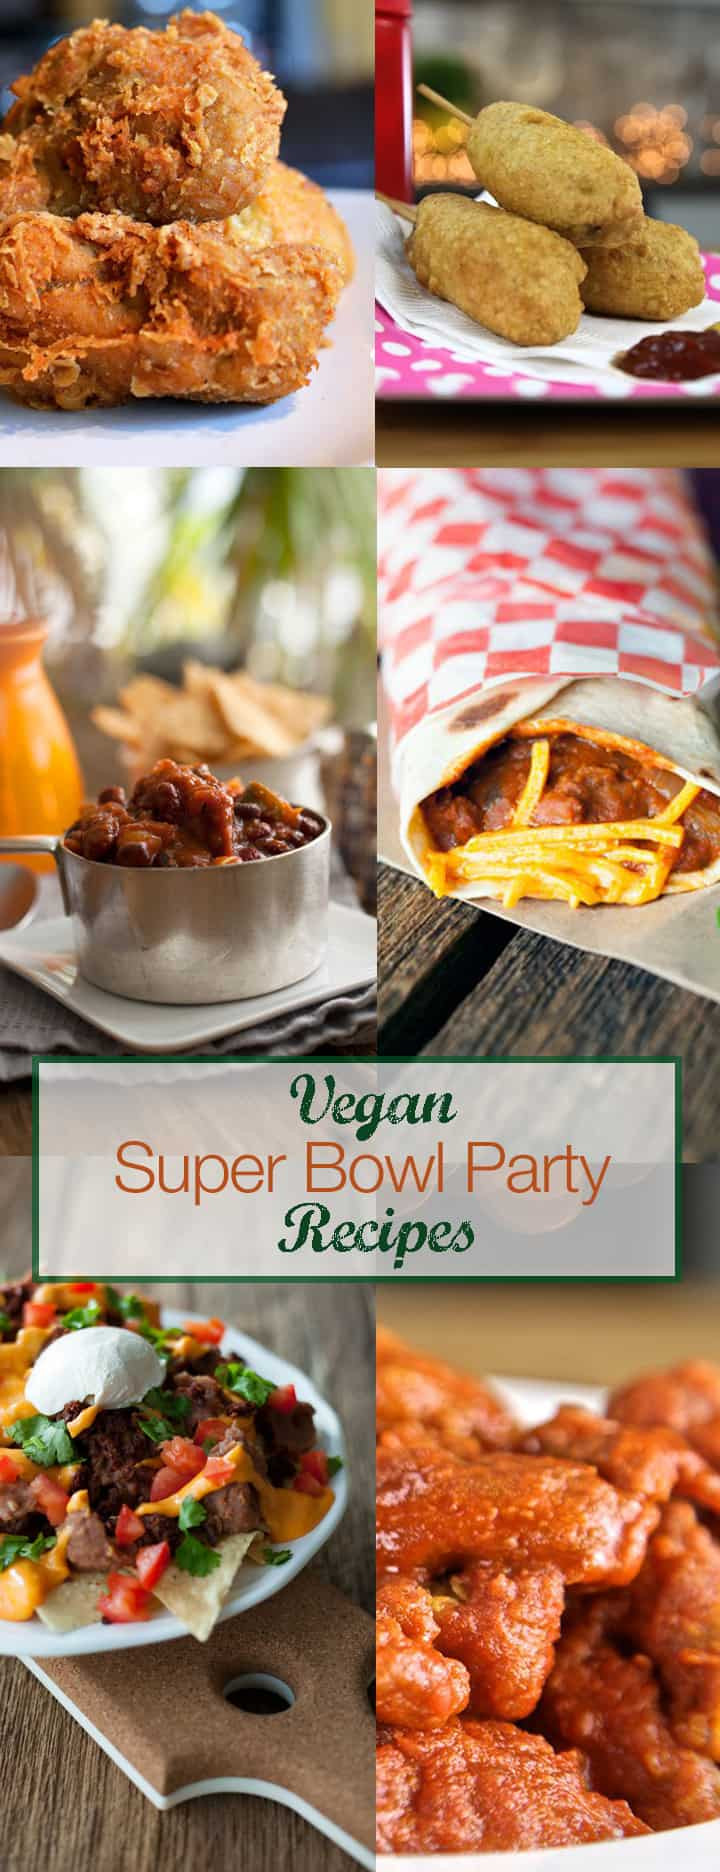 Super Bowl Dishes Recipes
 Easy Super Bowl Recipes VEGAN